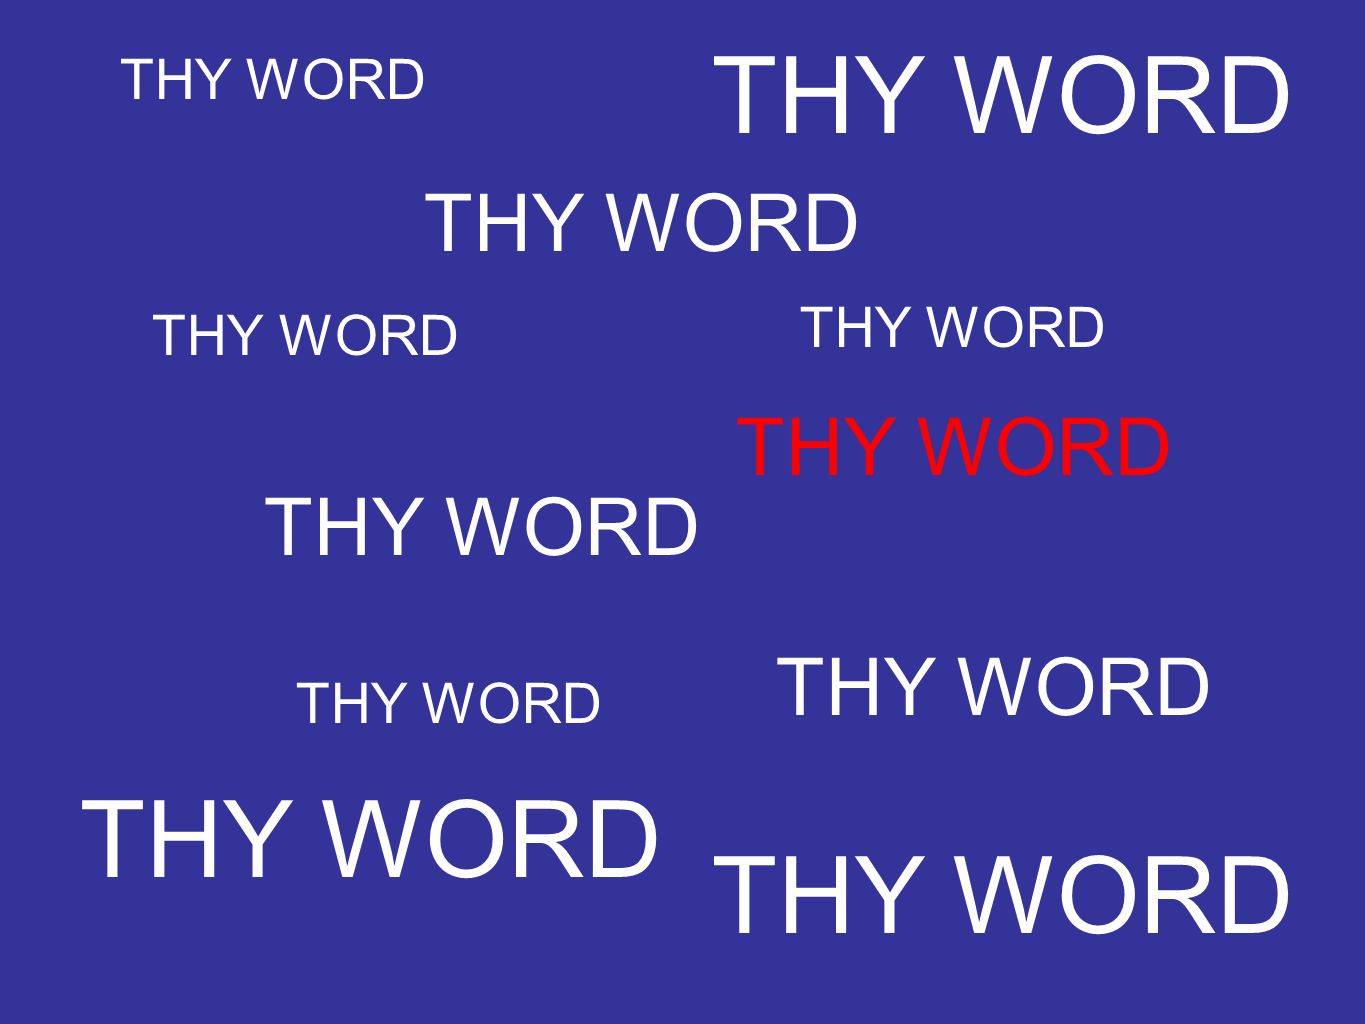 THY WORD THY WORD THY WORD THY WORD THY WORD THY WORD THY WORD THY WORD THY WORD THY WORD THY WORD